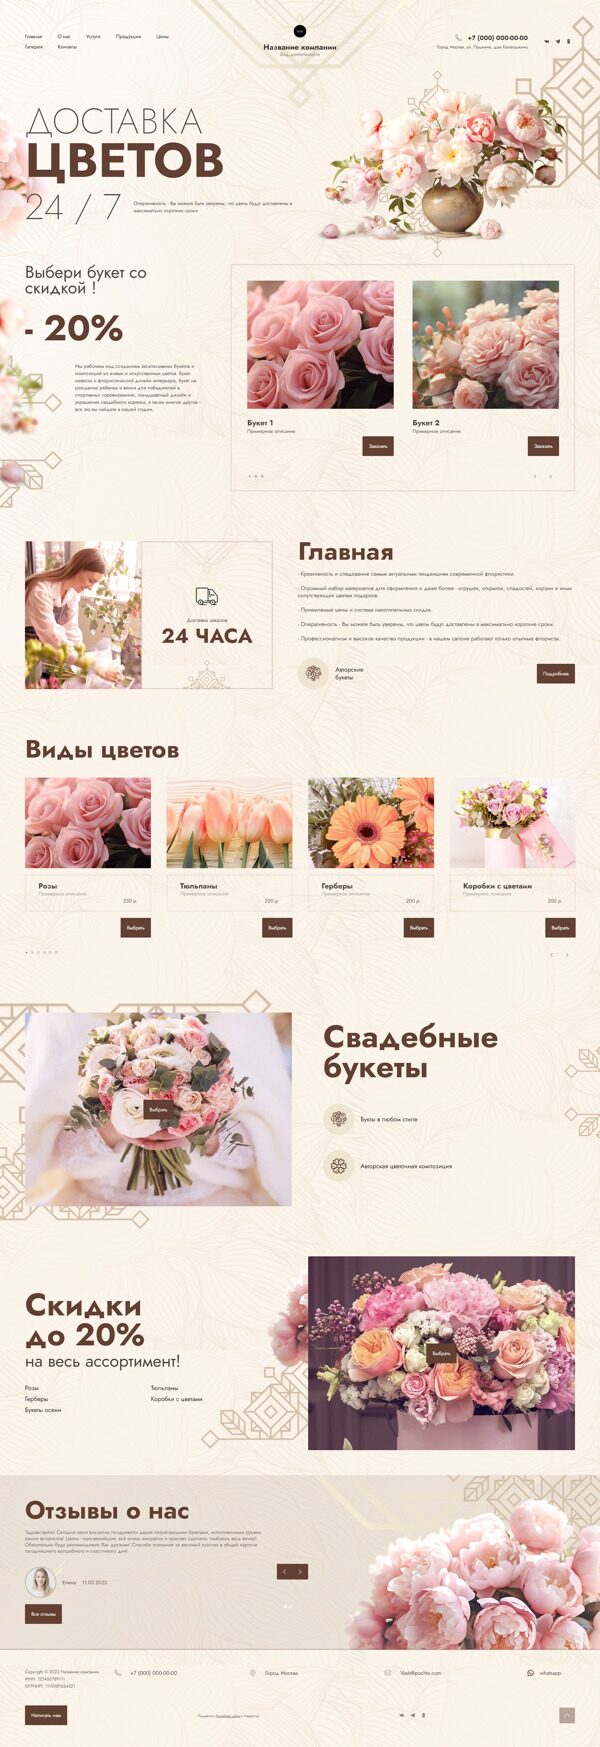 Готовый Сайт-Бизнес № 5367017 - Каталог цветов (Десктопная версия)